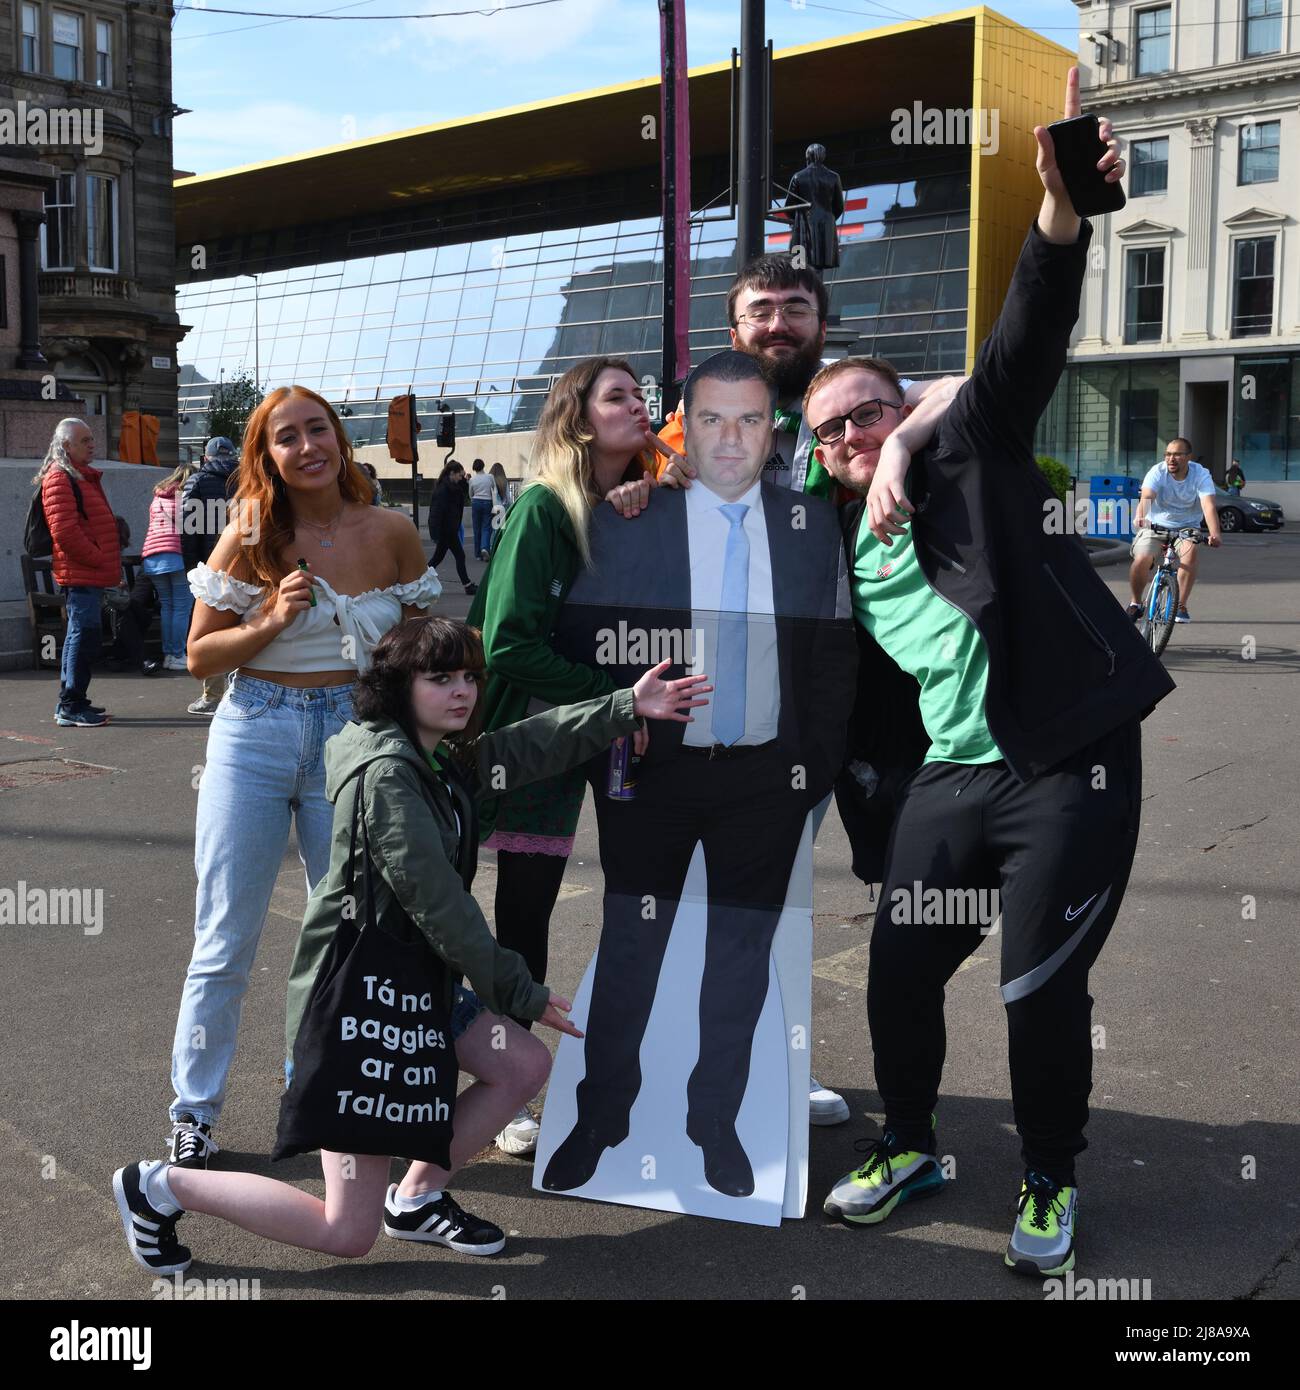 14th, mayo, 2022. Glasgow, Escocia. Los aficionados al fútbol se reúnen en George Square para celebrar la temporada ganadora del título de los Celtic Football Clubs. Estos fans celebran con corte de cartón de Ange Postecoglou. Crédito. Douglas Carr/Alamy Live News Foto de stock